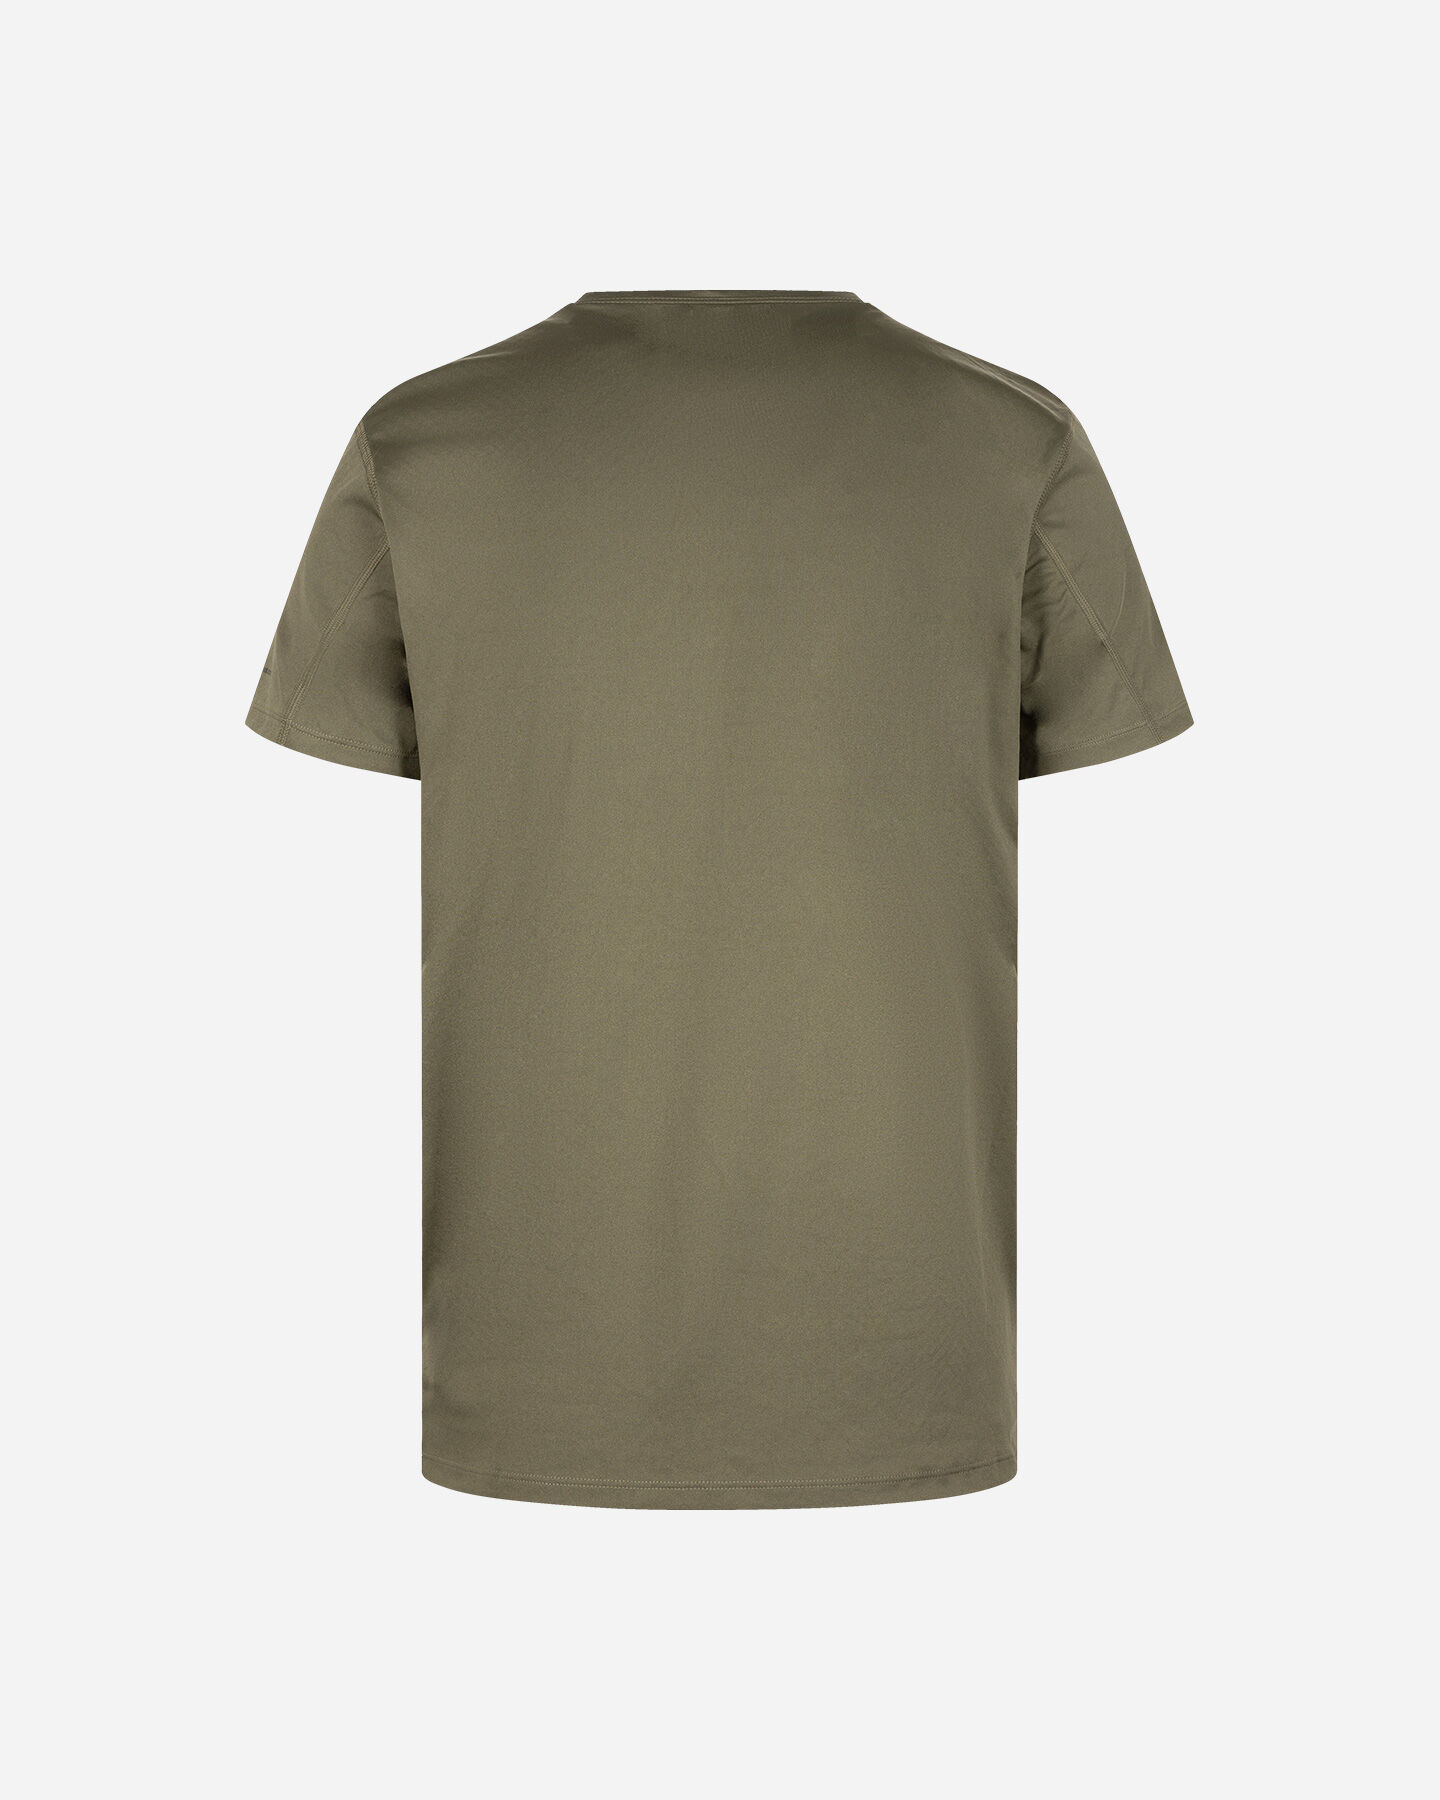  T-Shirt COLUMBIA ZERO RULES M S5291090|397|S scatto 1